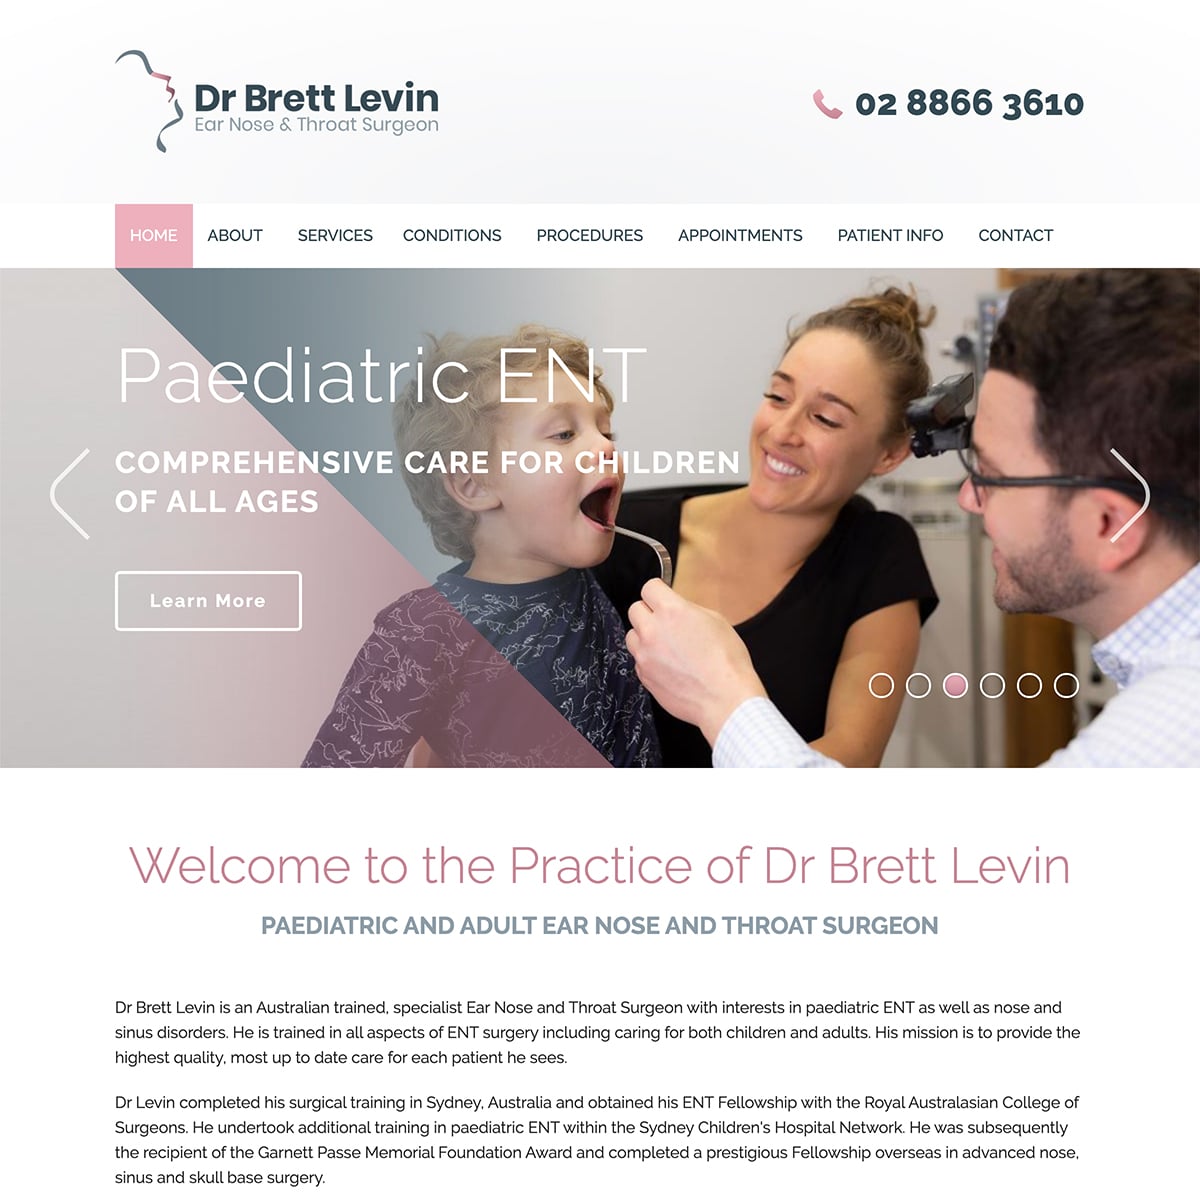 Dr Brett Levin - Homepage Slide 2